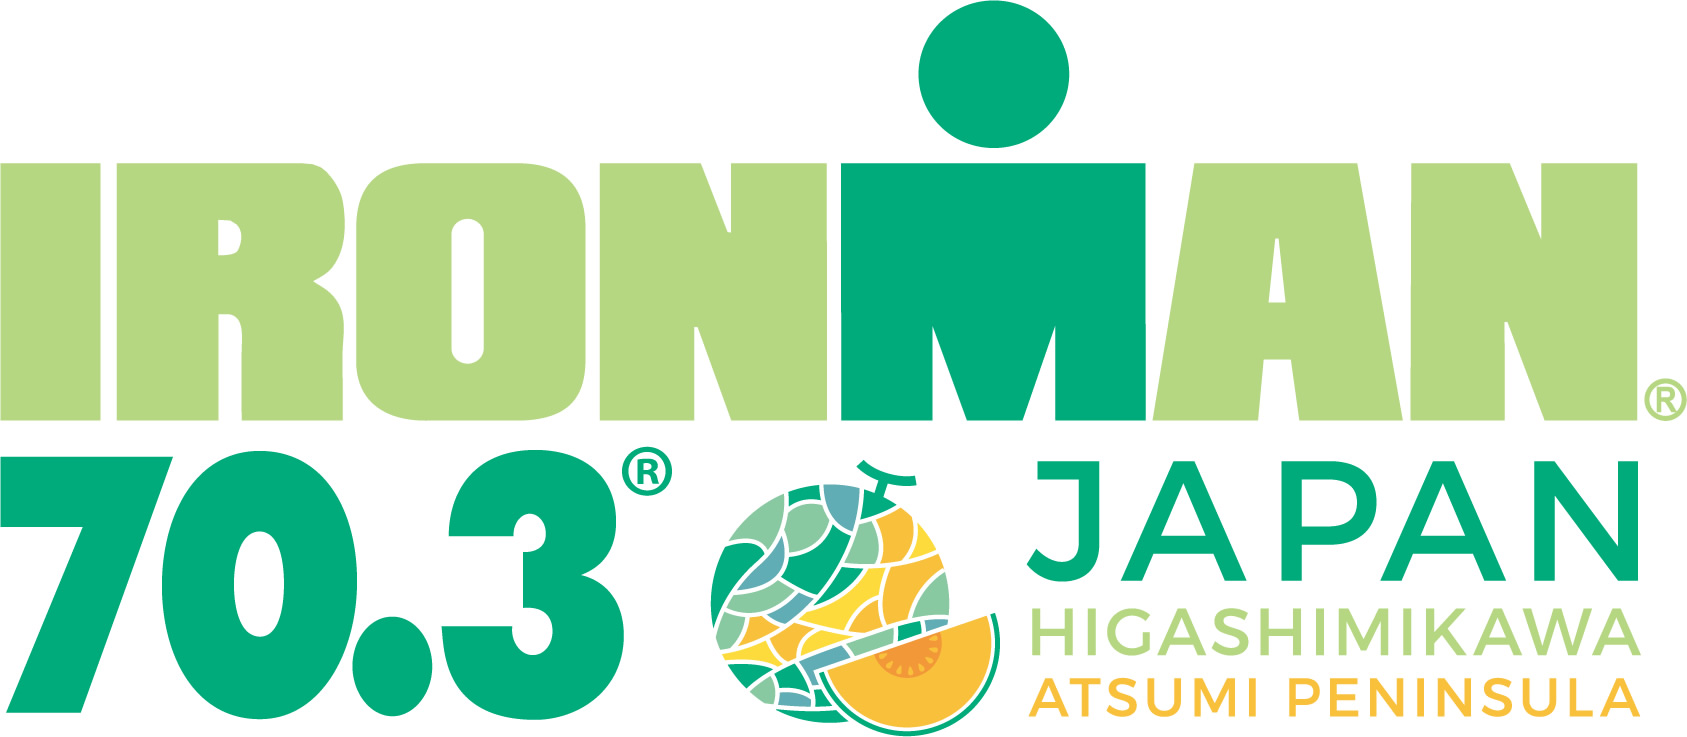 IRONMAN 70.3 Higashi Mikawa Japan in Atsumi Peninsula